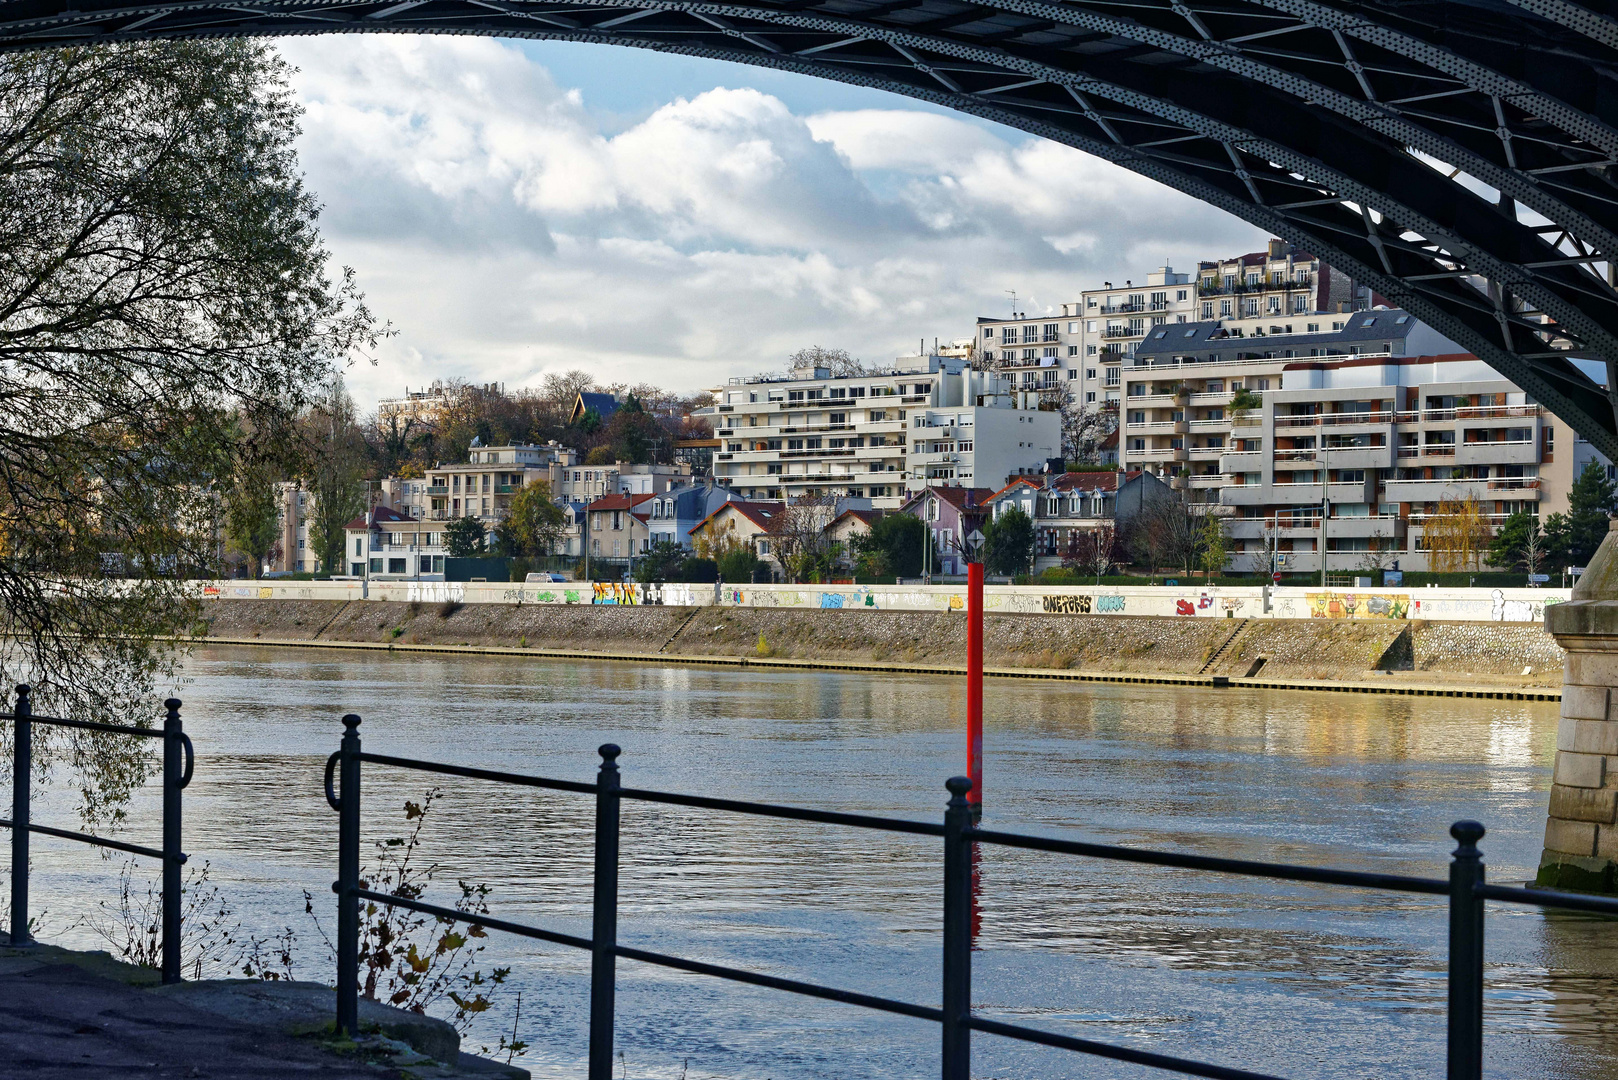 Vue of the Seine